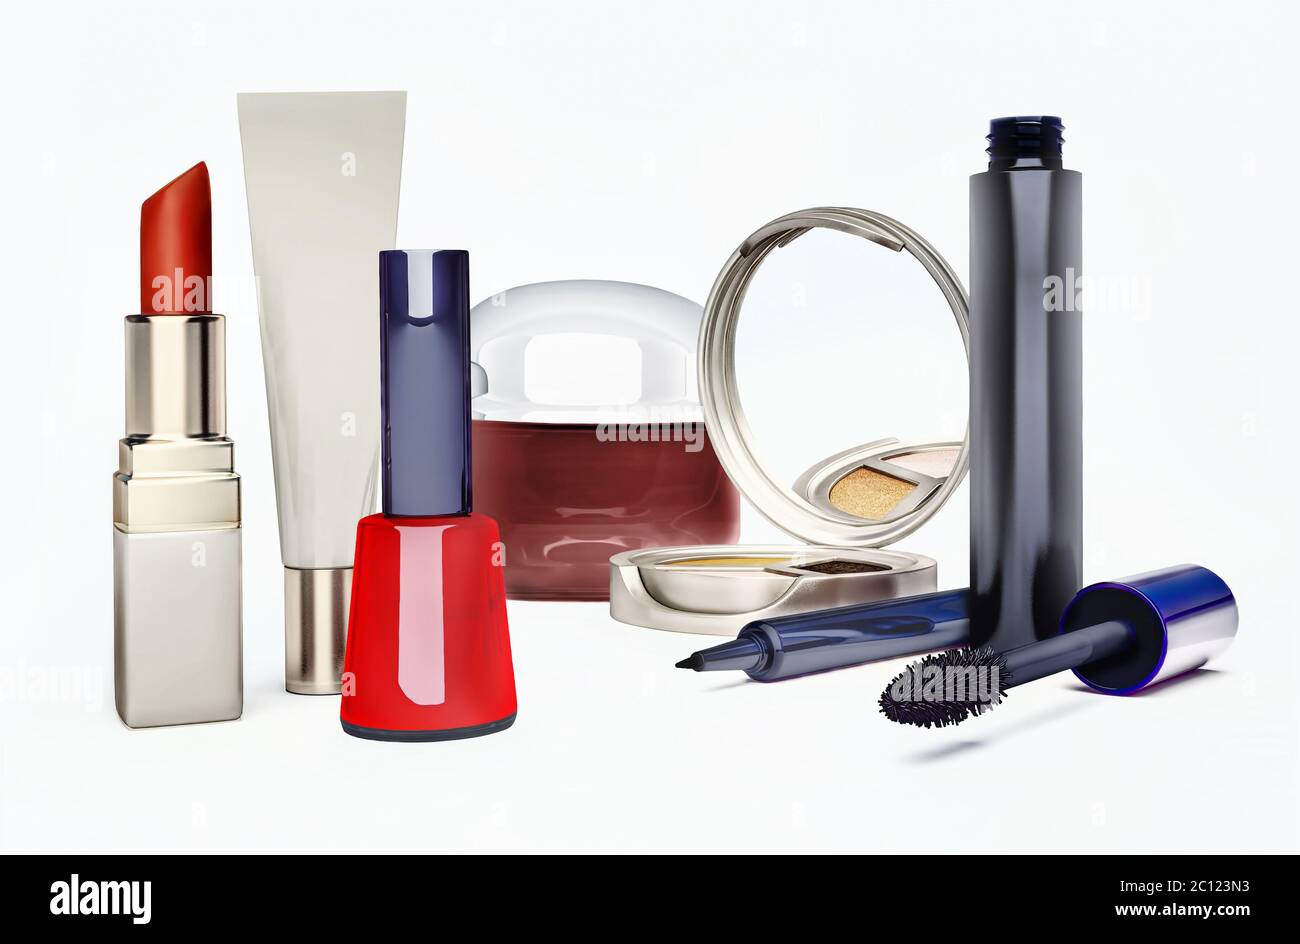 Productos cosméticos: Crema, lipstik, esmalte de uñas, sombra de ojos y mascara sobre fondo blanco. Foto de stock